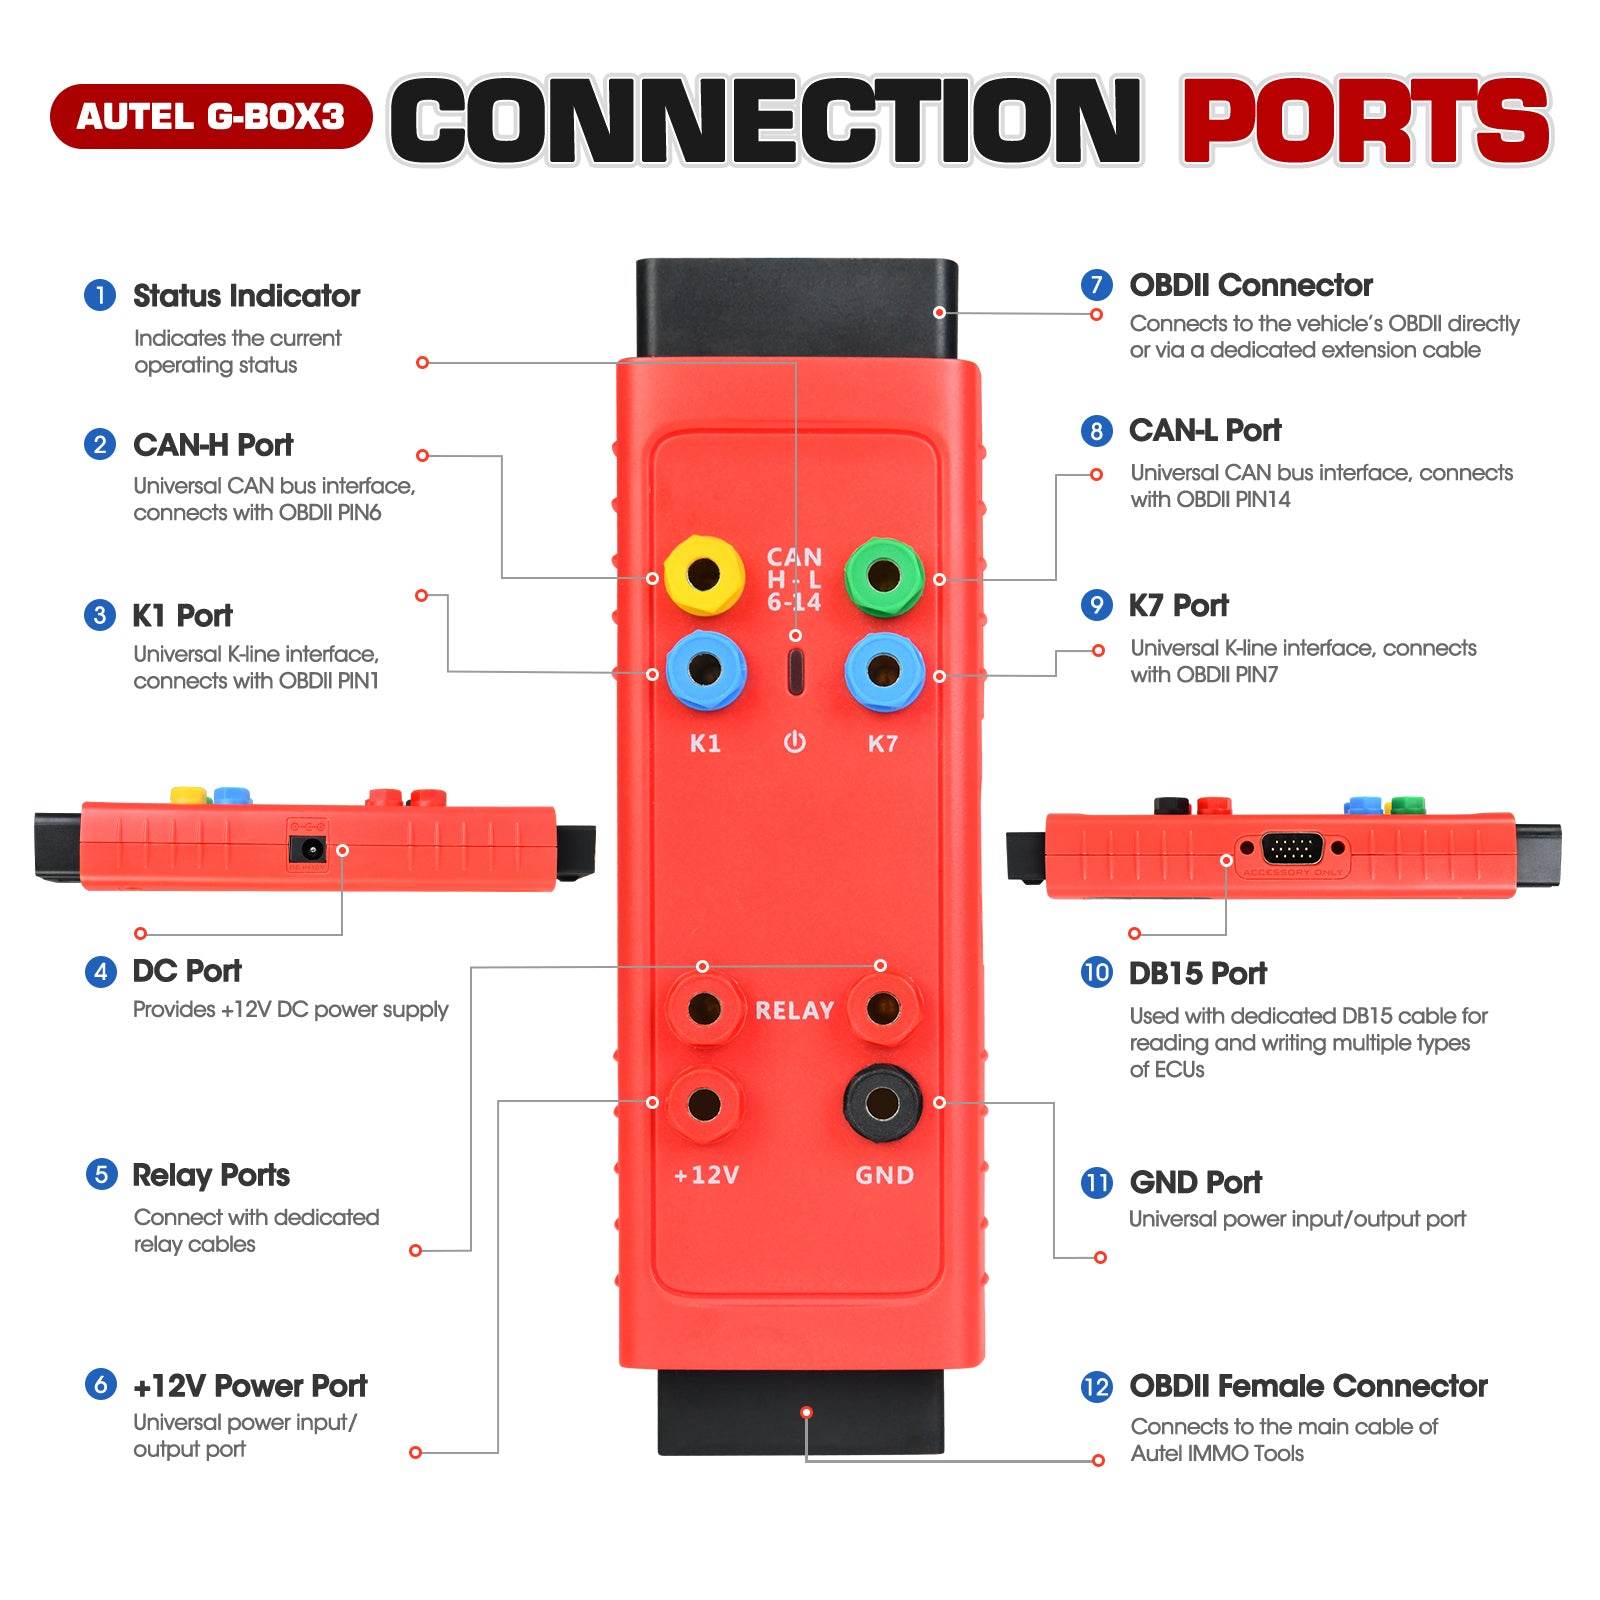 Autel G-BOX3 Connection Ports